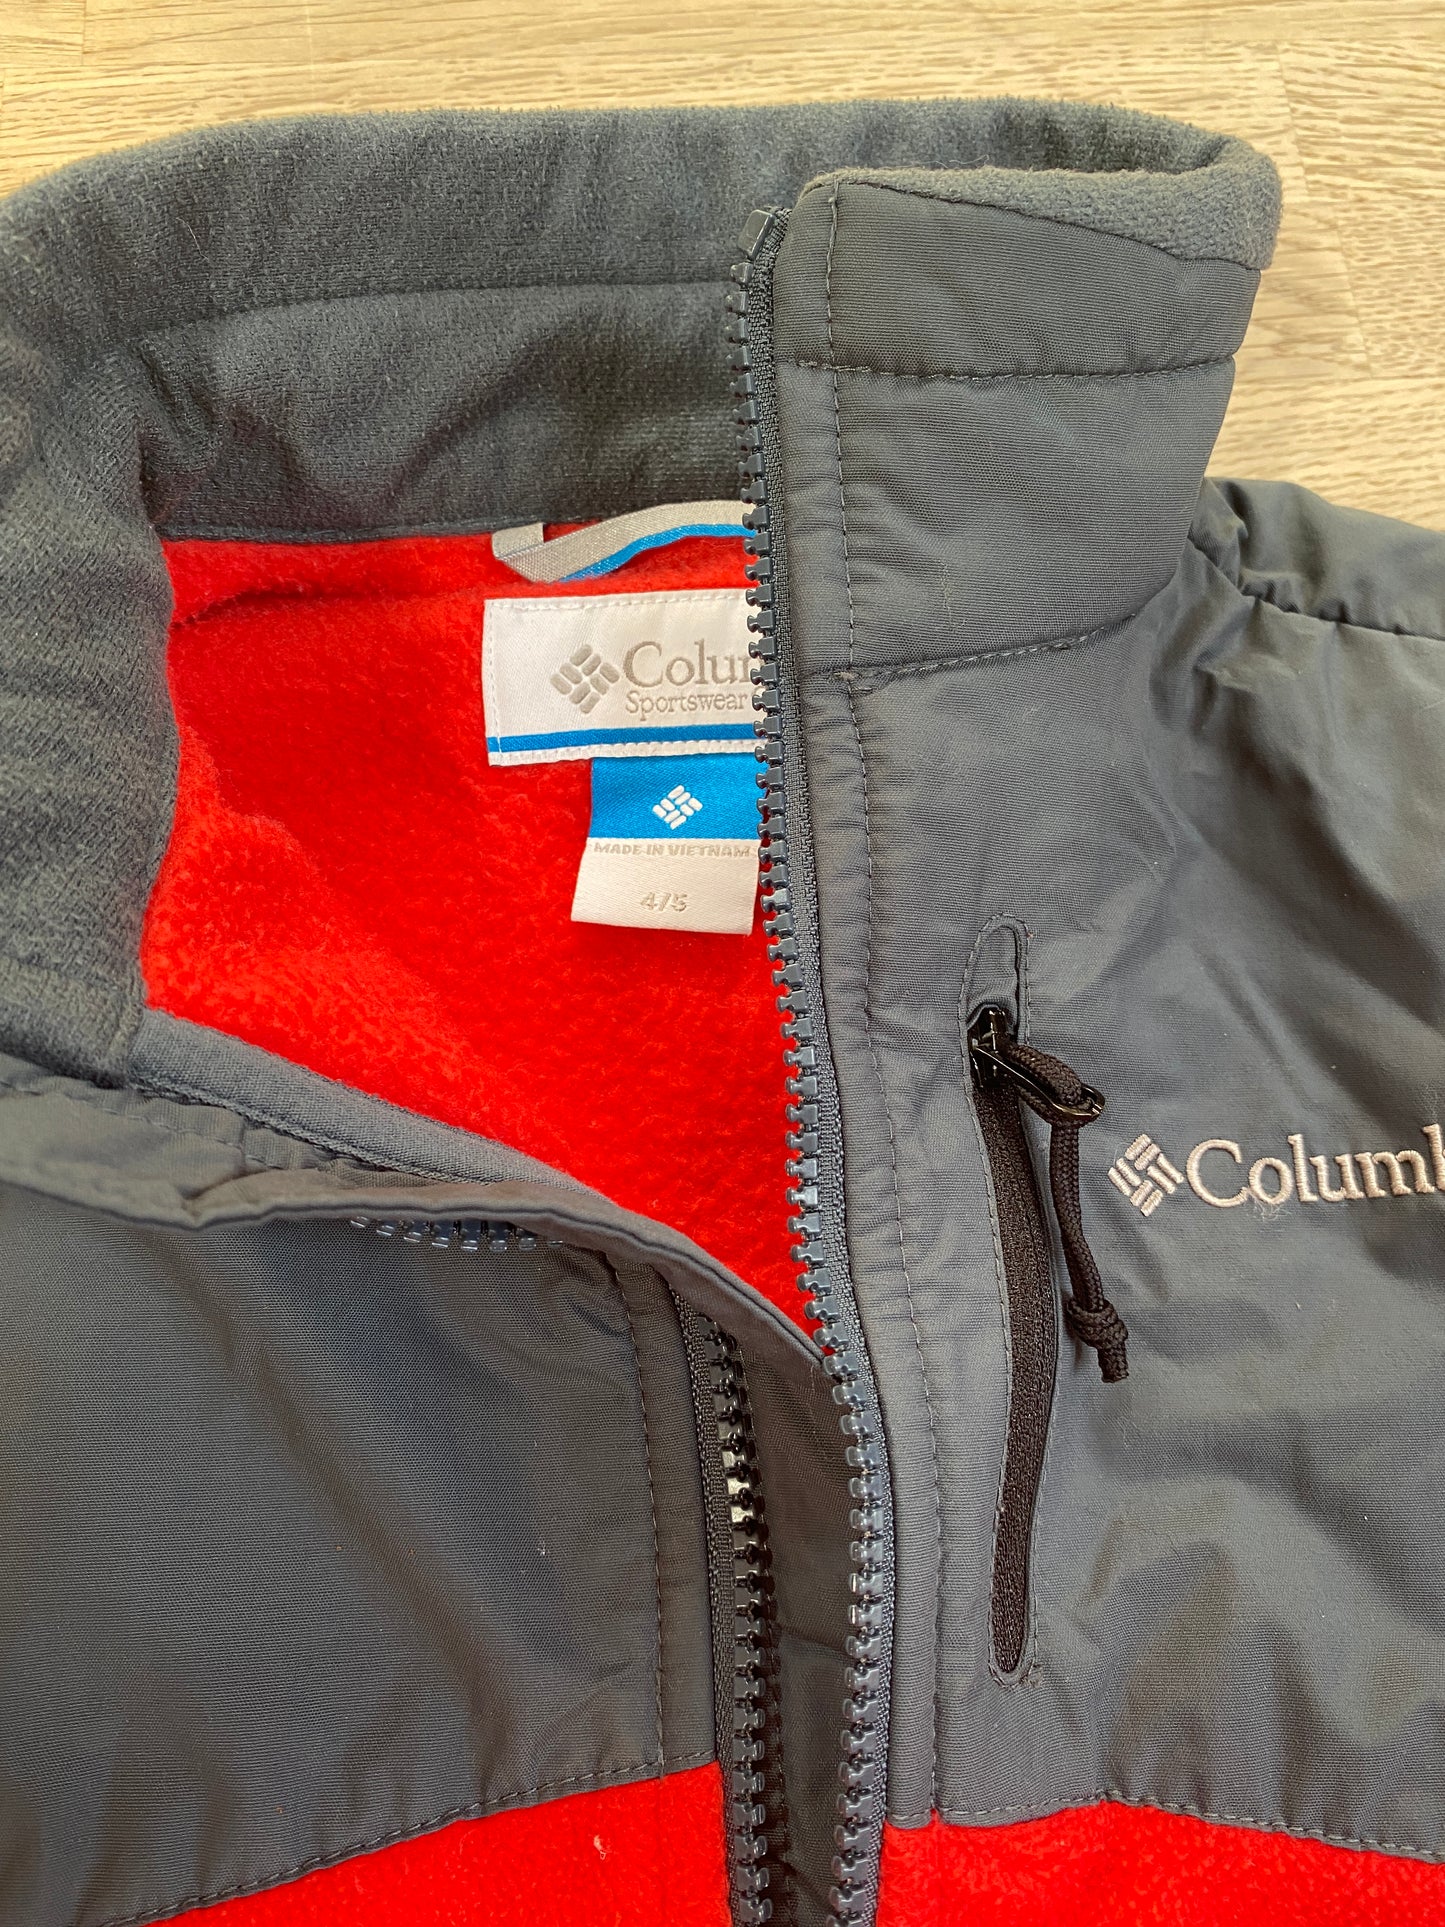 Red Columbia Fleece Zip-up Jacket / Sweatshirt - Size 4/5 (Pre-Loved)